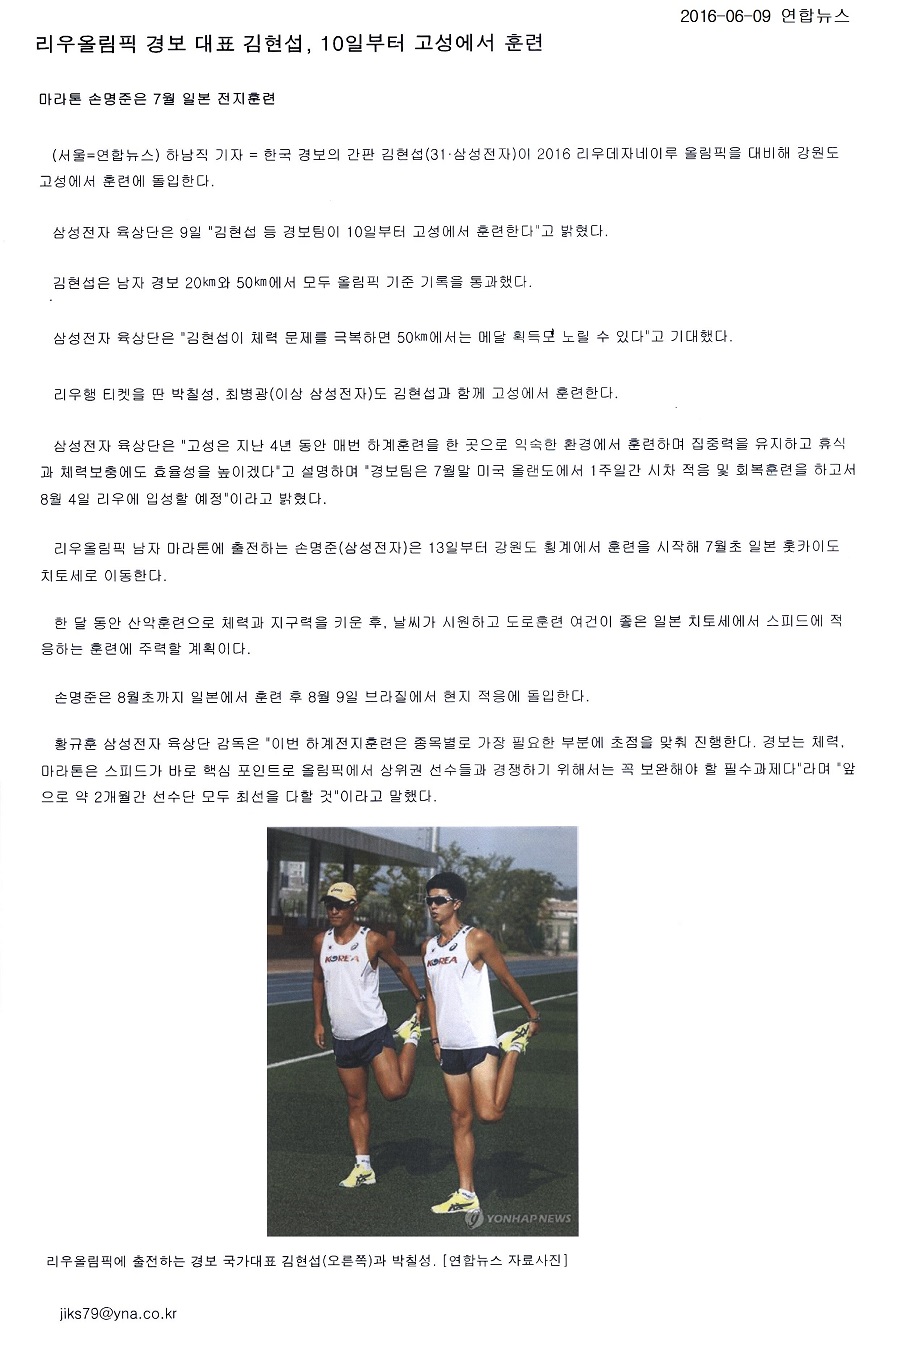 리우올림픽 경보 대표 김현섭, 10일부터 고성에서 훈련